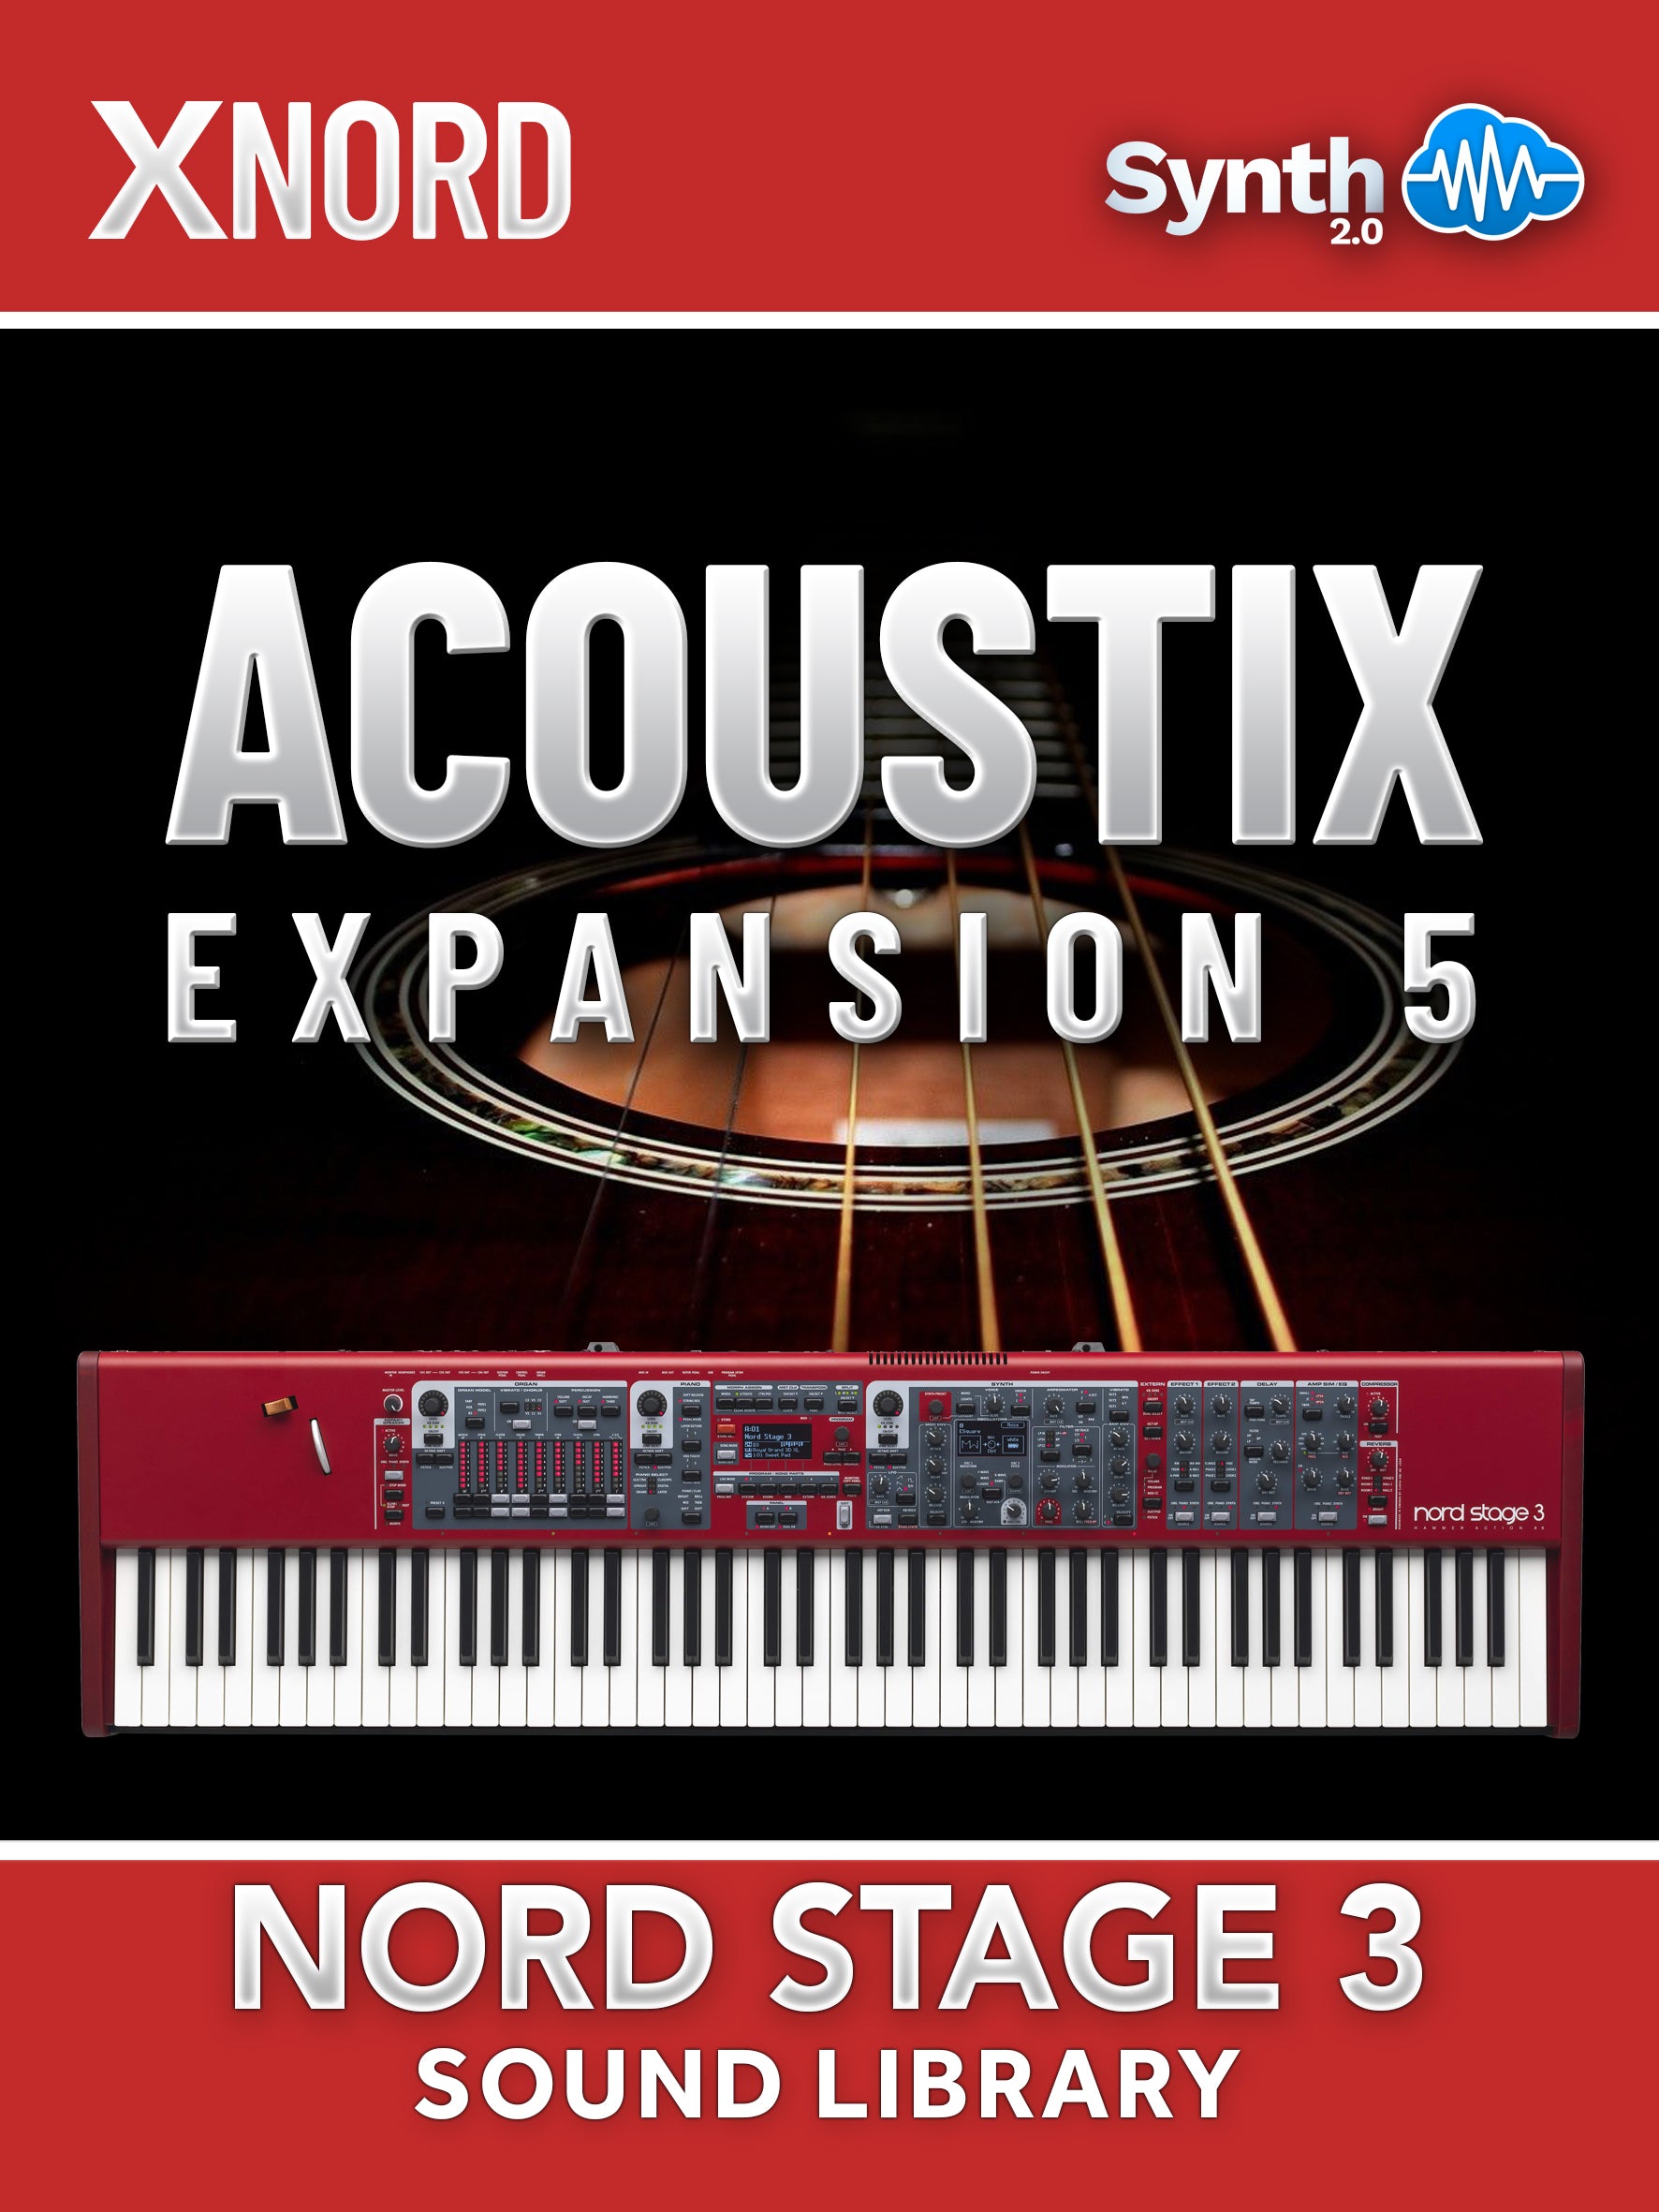 DVK031 - ( Bundle ) - Strings Samples Expansion + AcoustiX Samples Expansion - Nord Stage 3